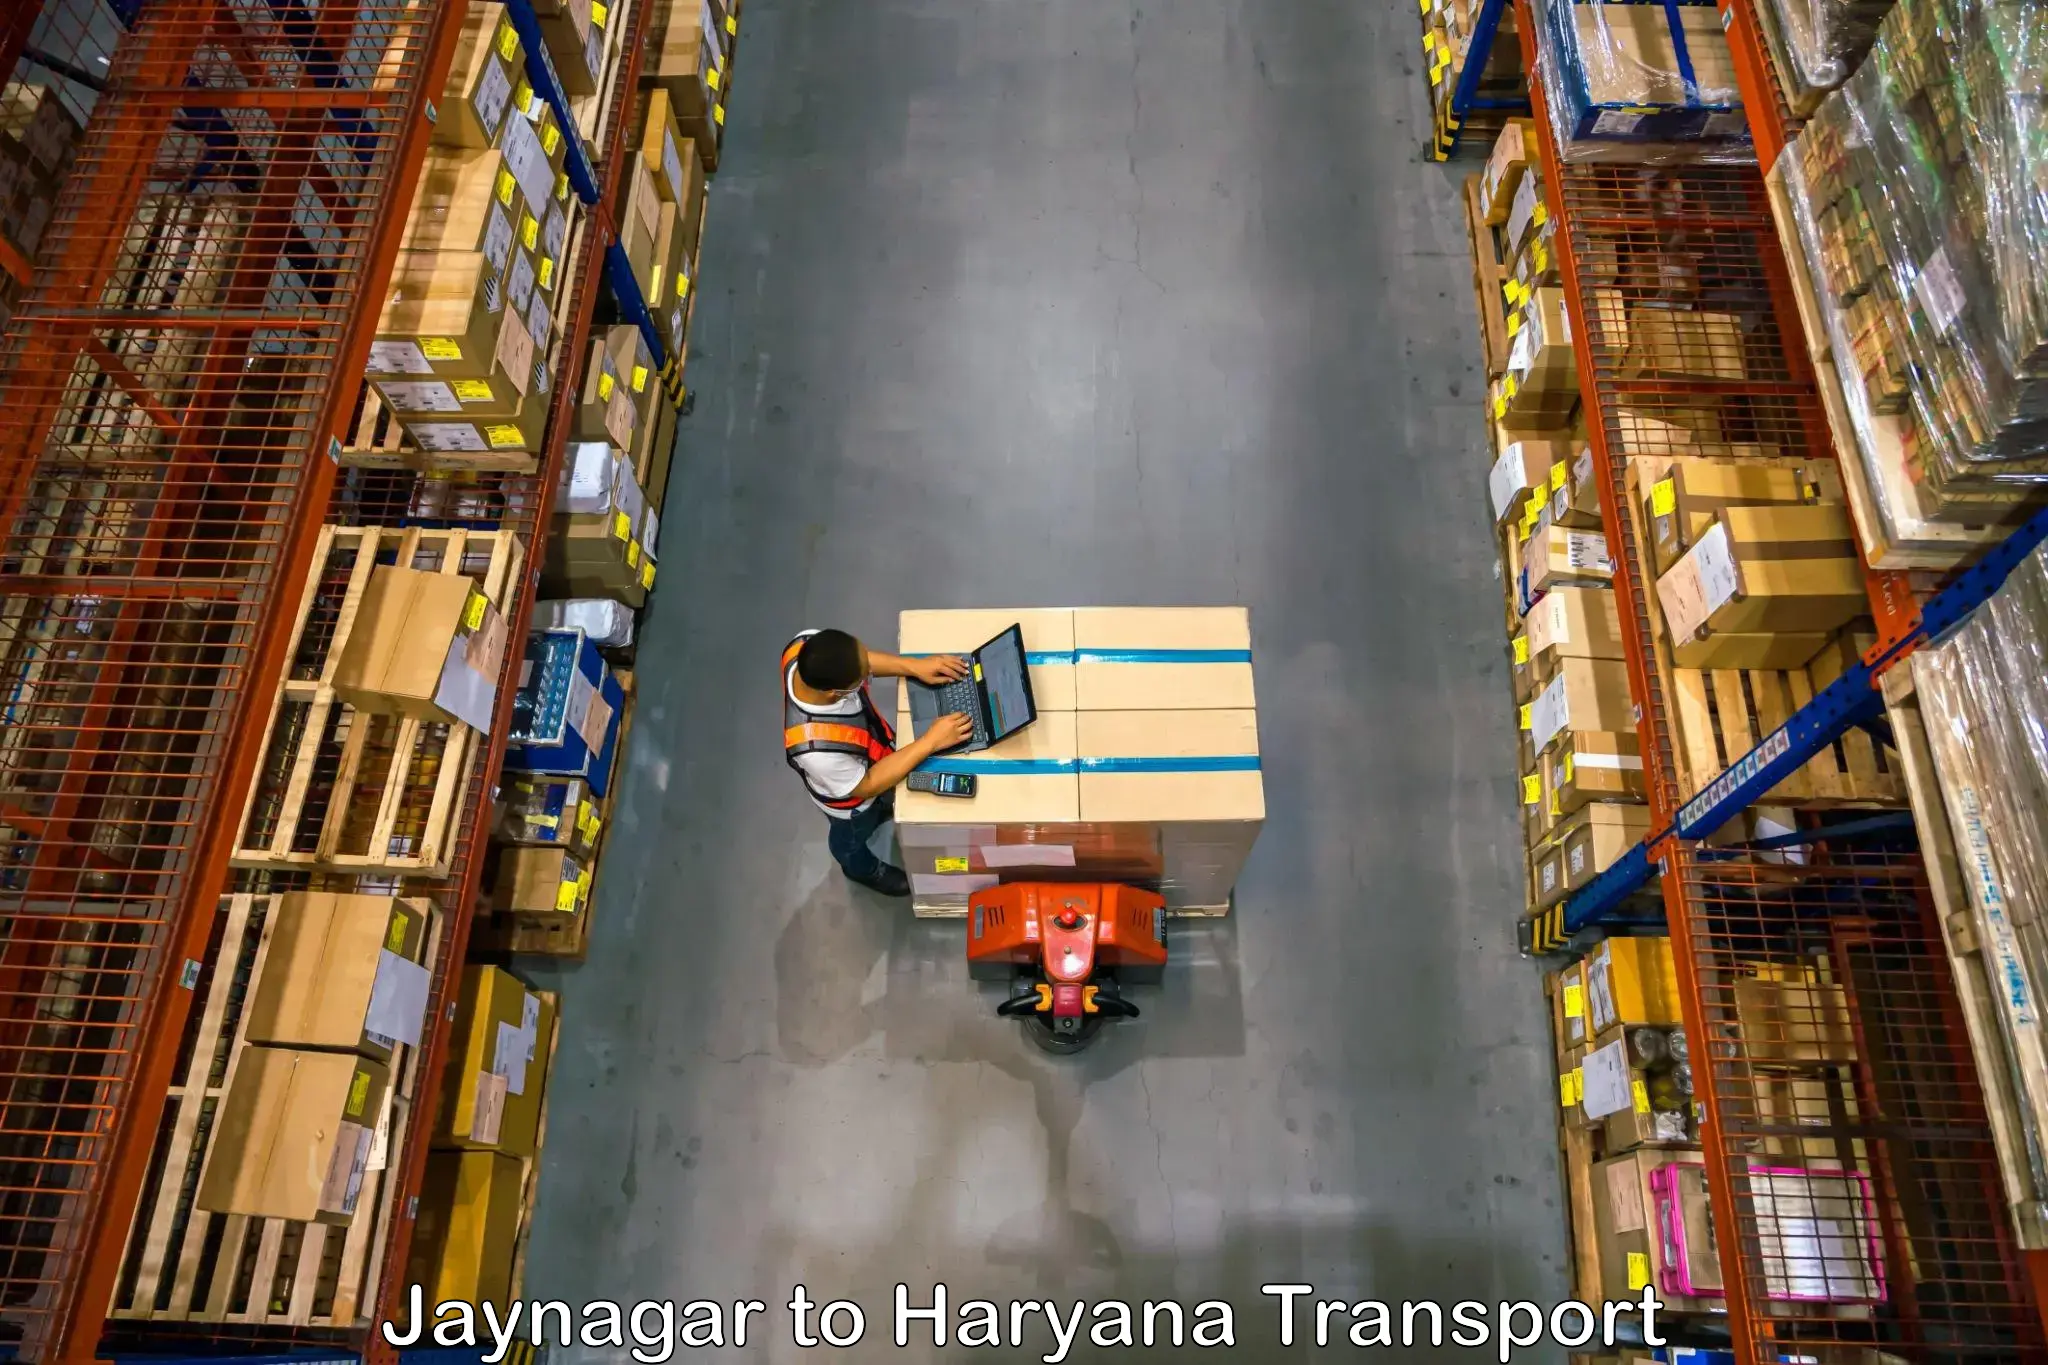 Cycle transportation service Jaynagar to Chaudhary Charan Singh Haryana Agricultural University Hisar